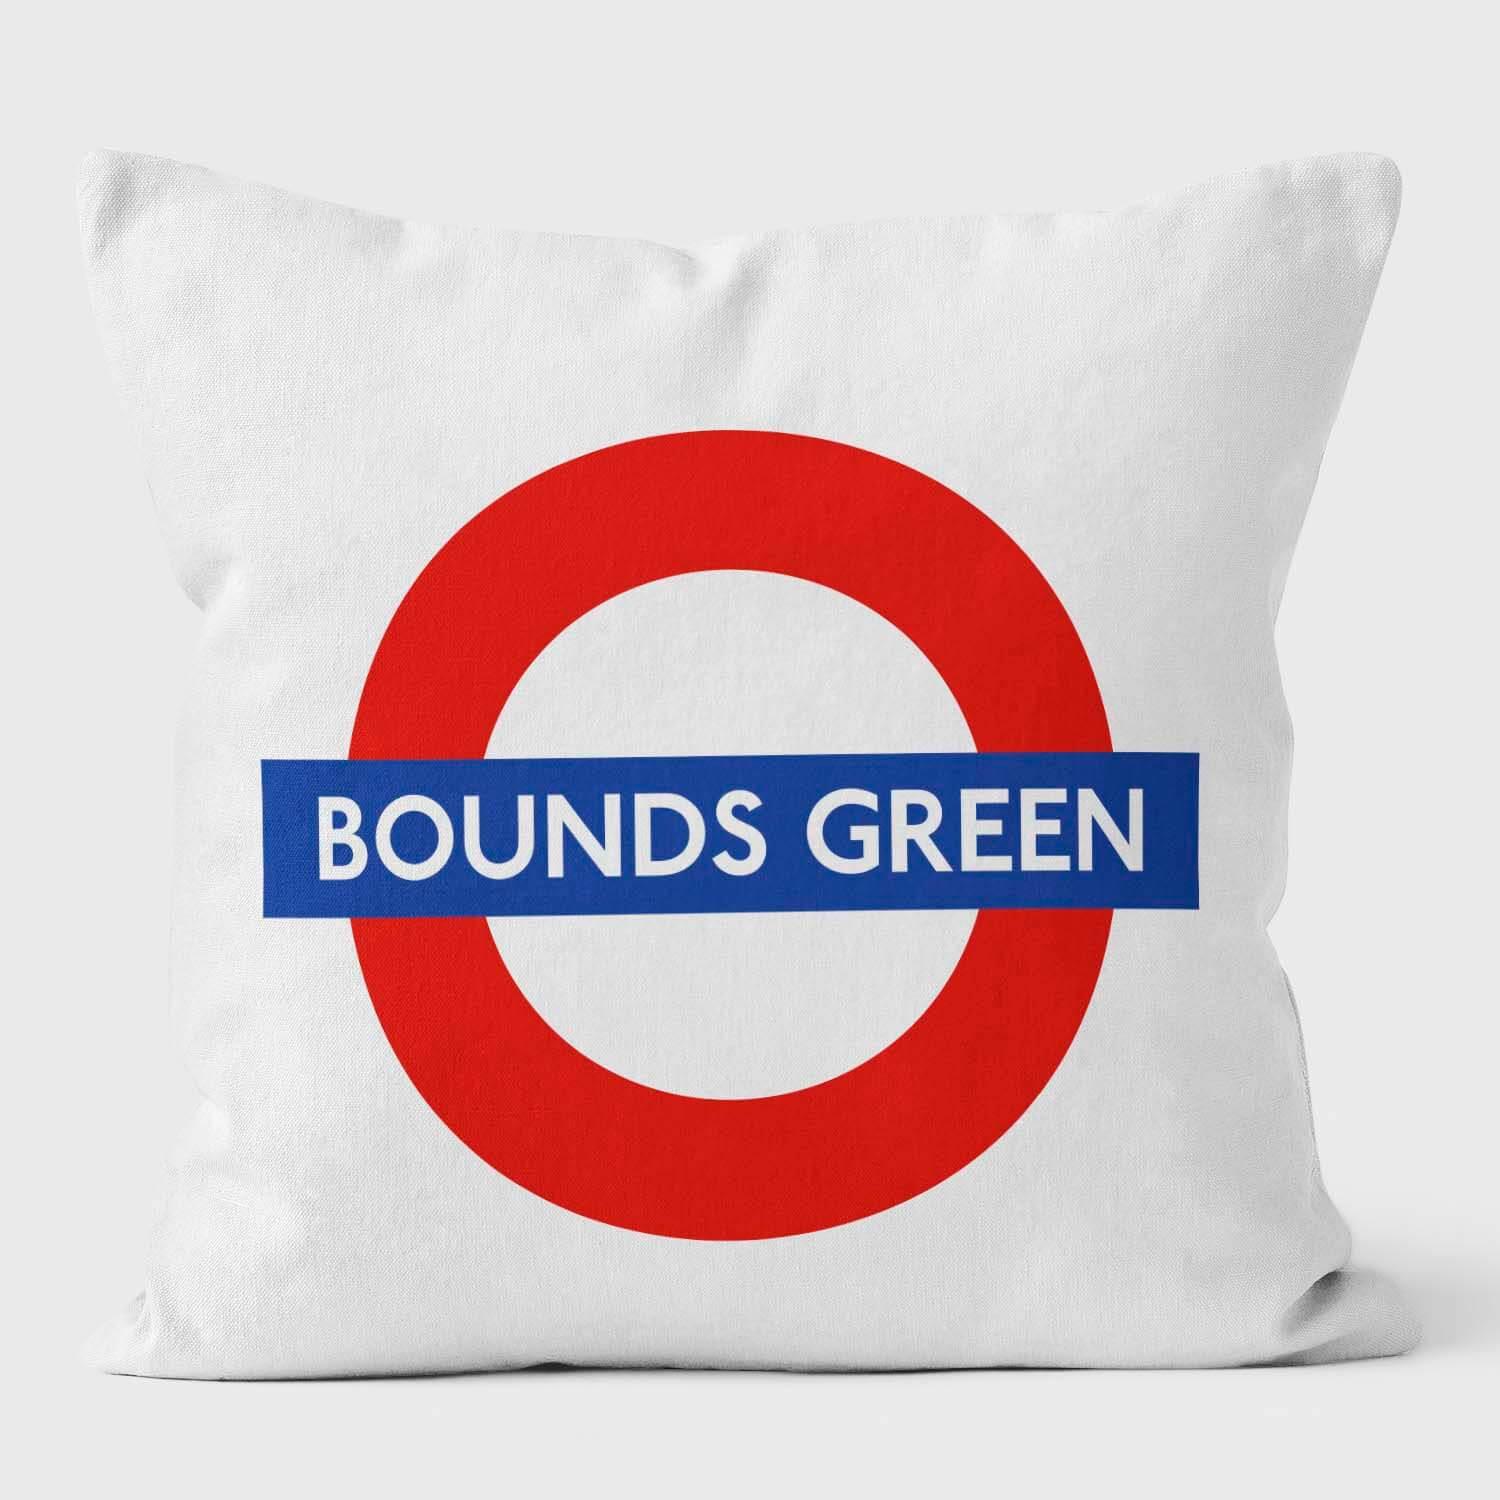 Bounds Green London Underground Tube Station Roundel Cushion - Handmade Cushions UK - WeLoveCushions